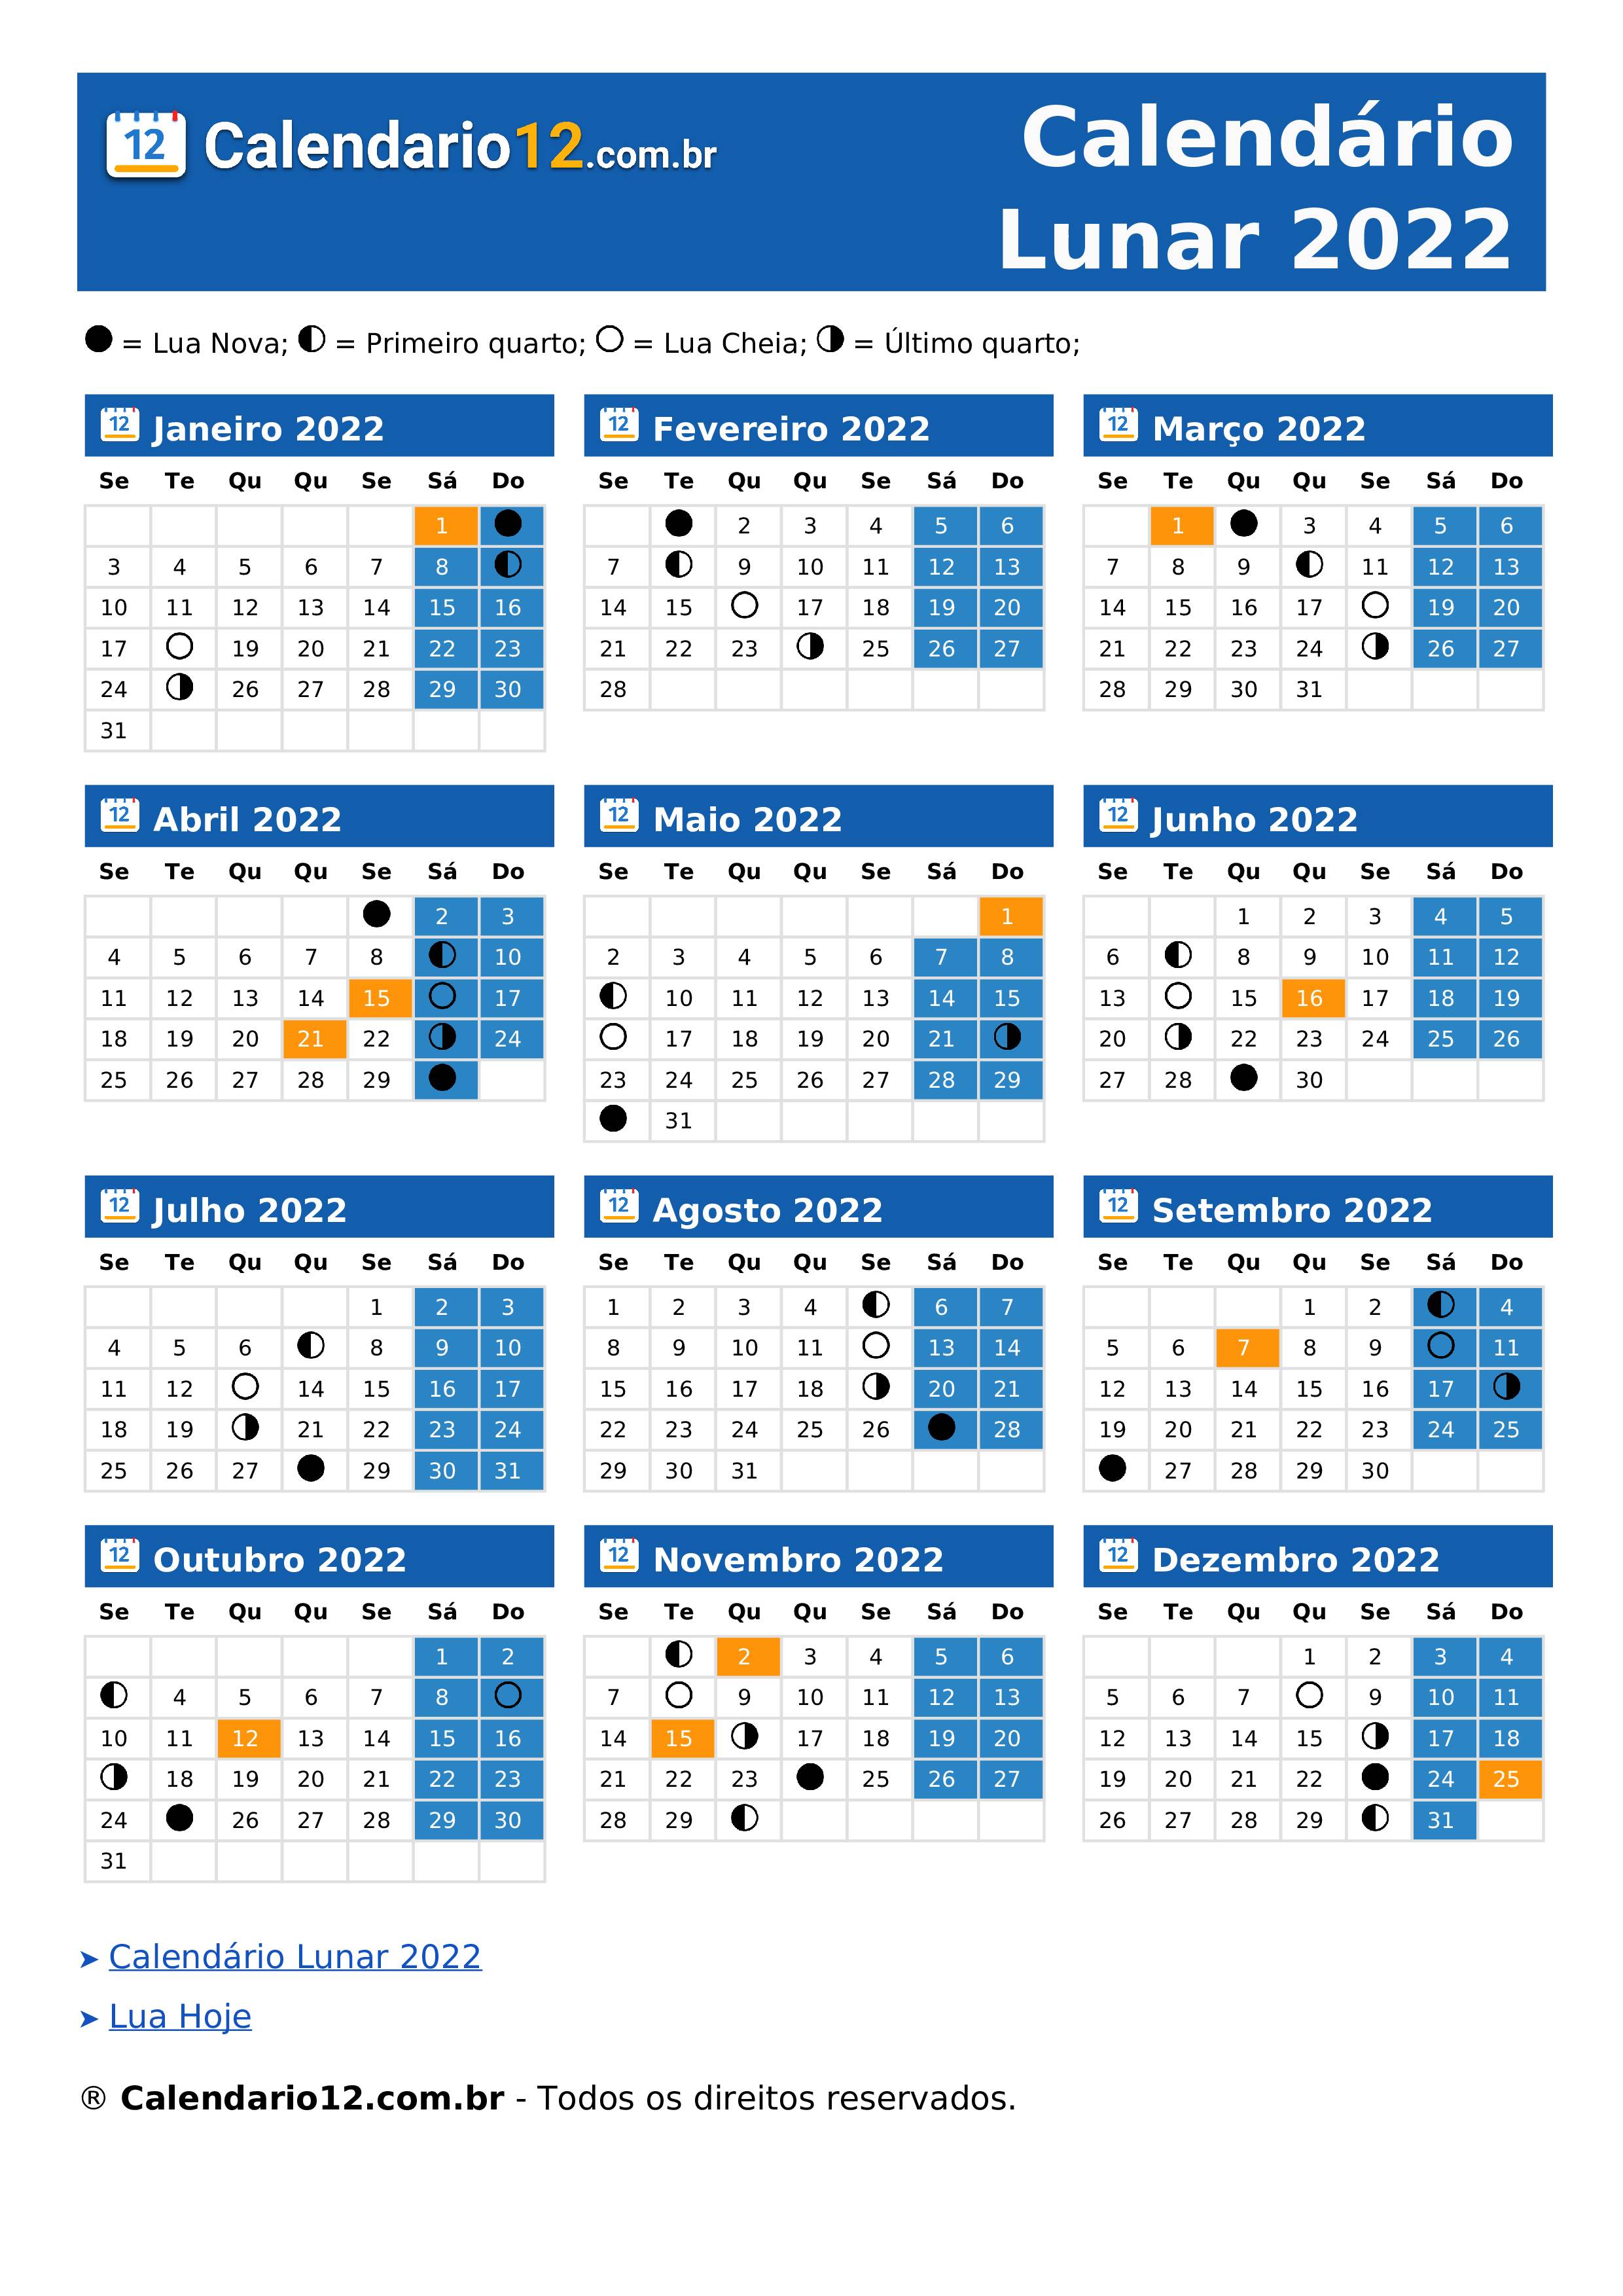 Calendário Lunar Novembro 2022 ⬅️ — Calendario12.com.br